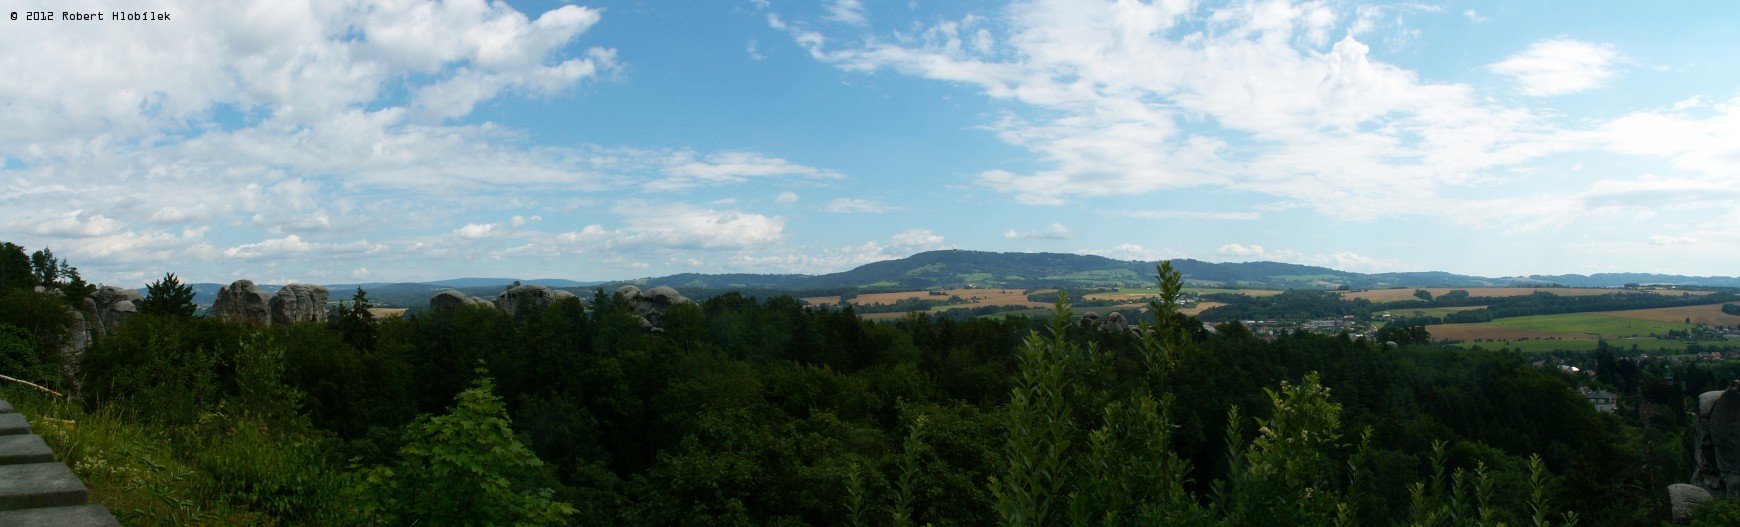 Pohled ze zámku Hrubá Skála